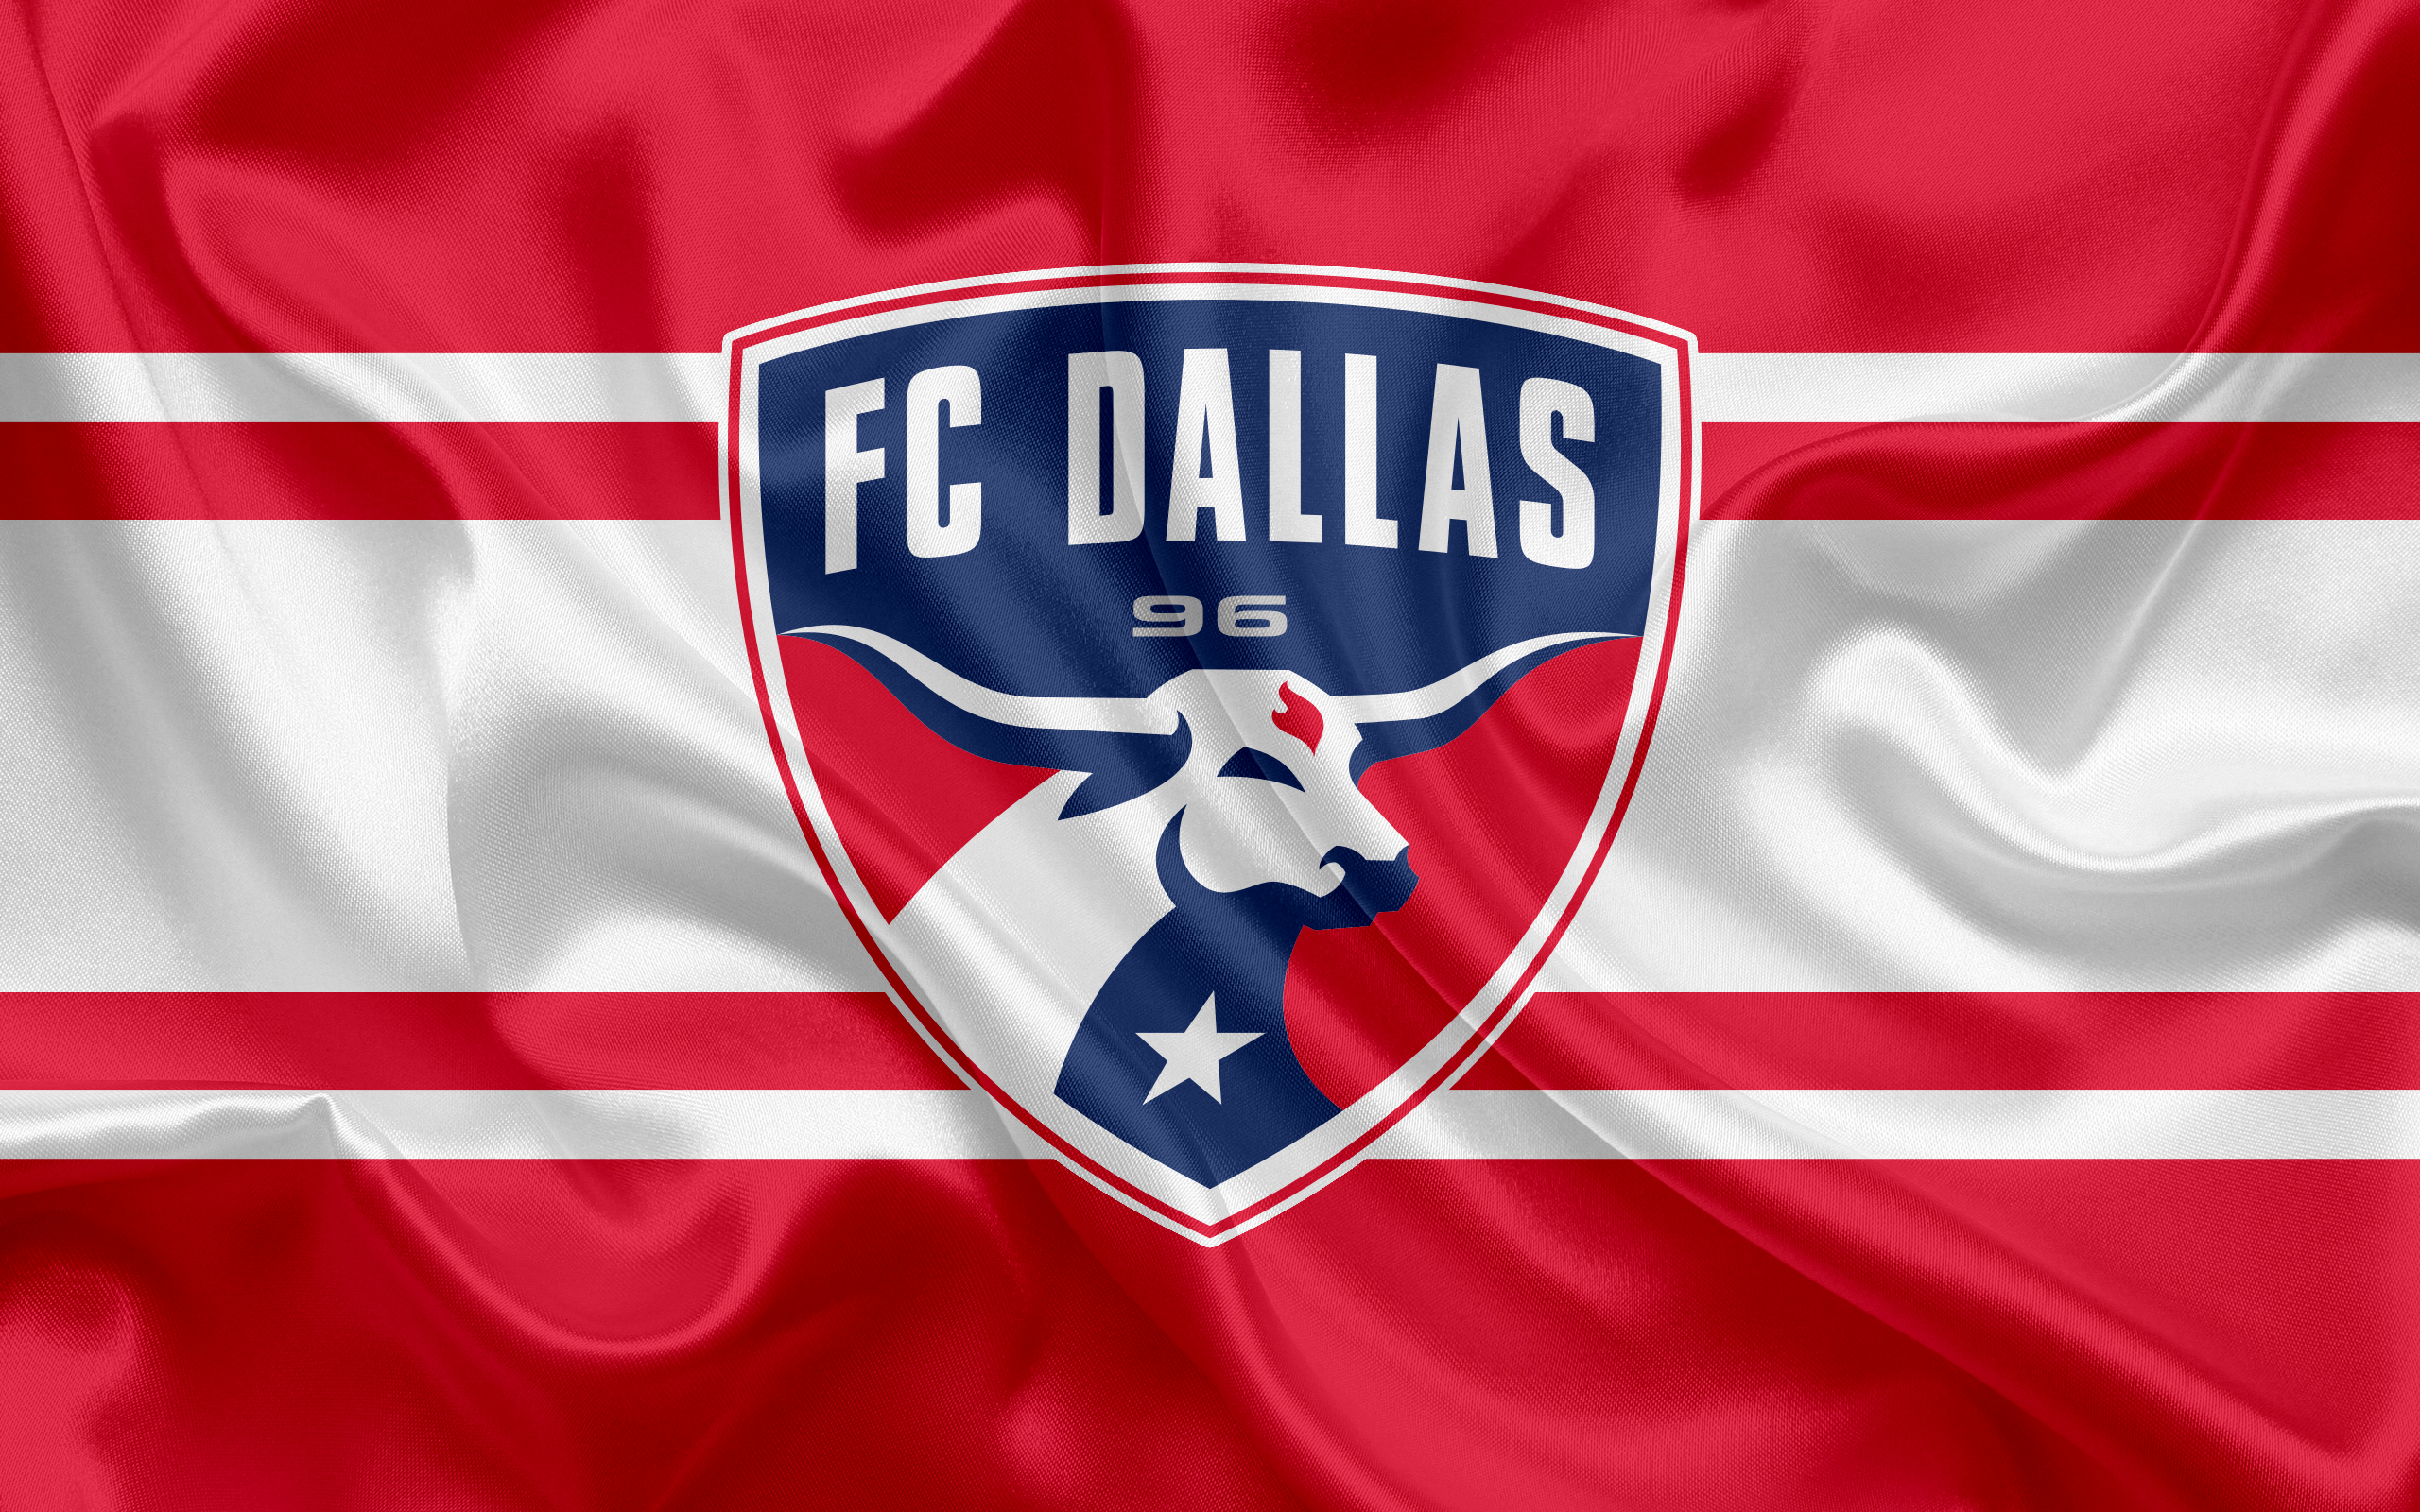 Emblem Fc Dallas Logo Mls Soccer Wallpaper:2560x1600